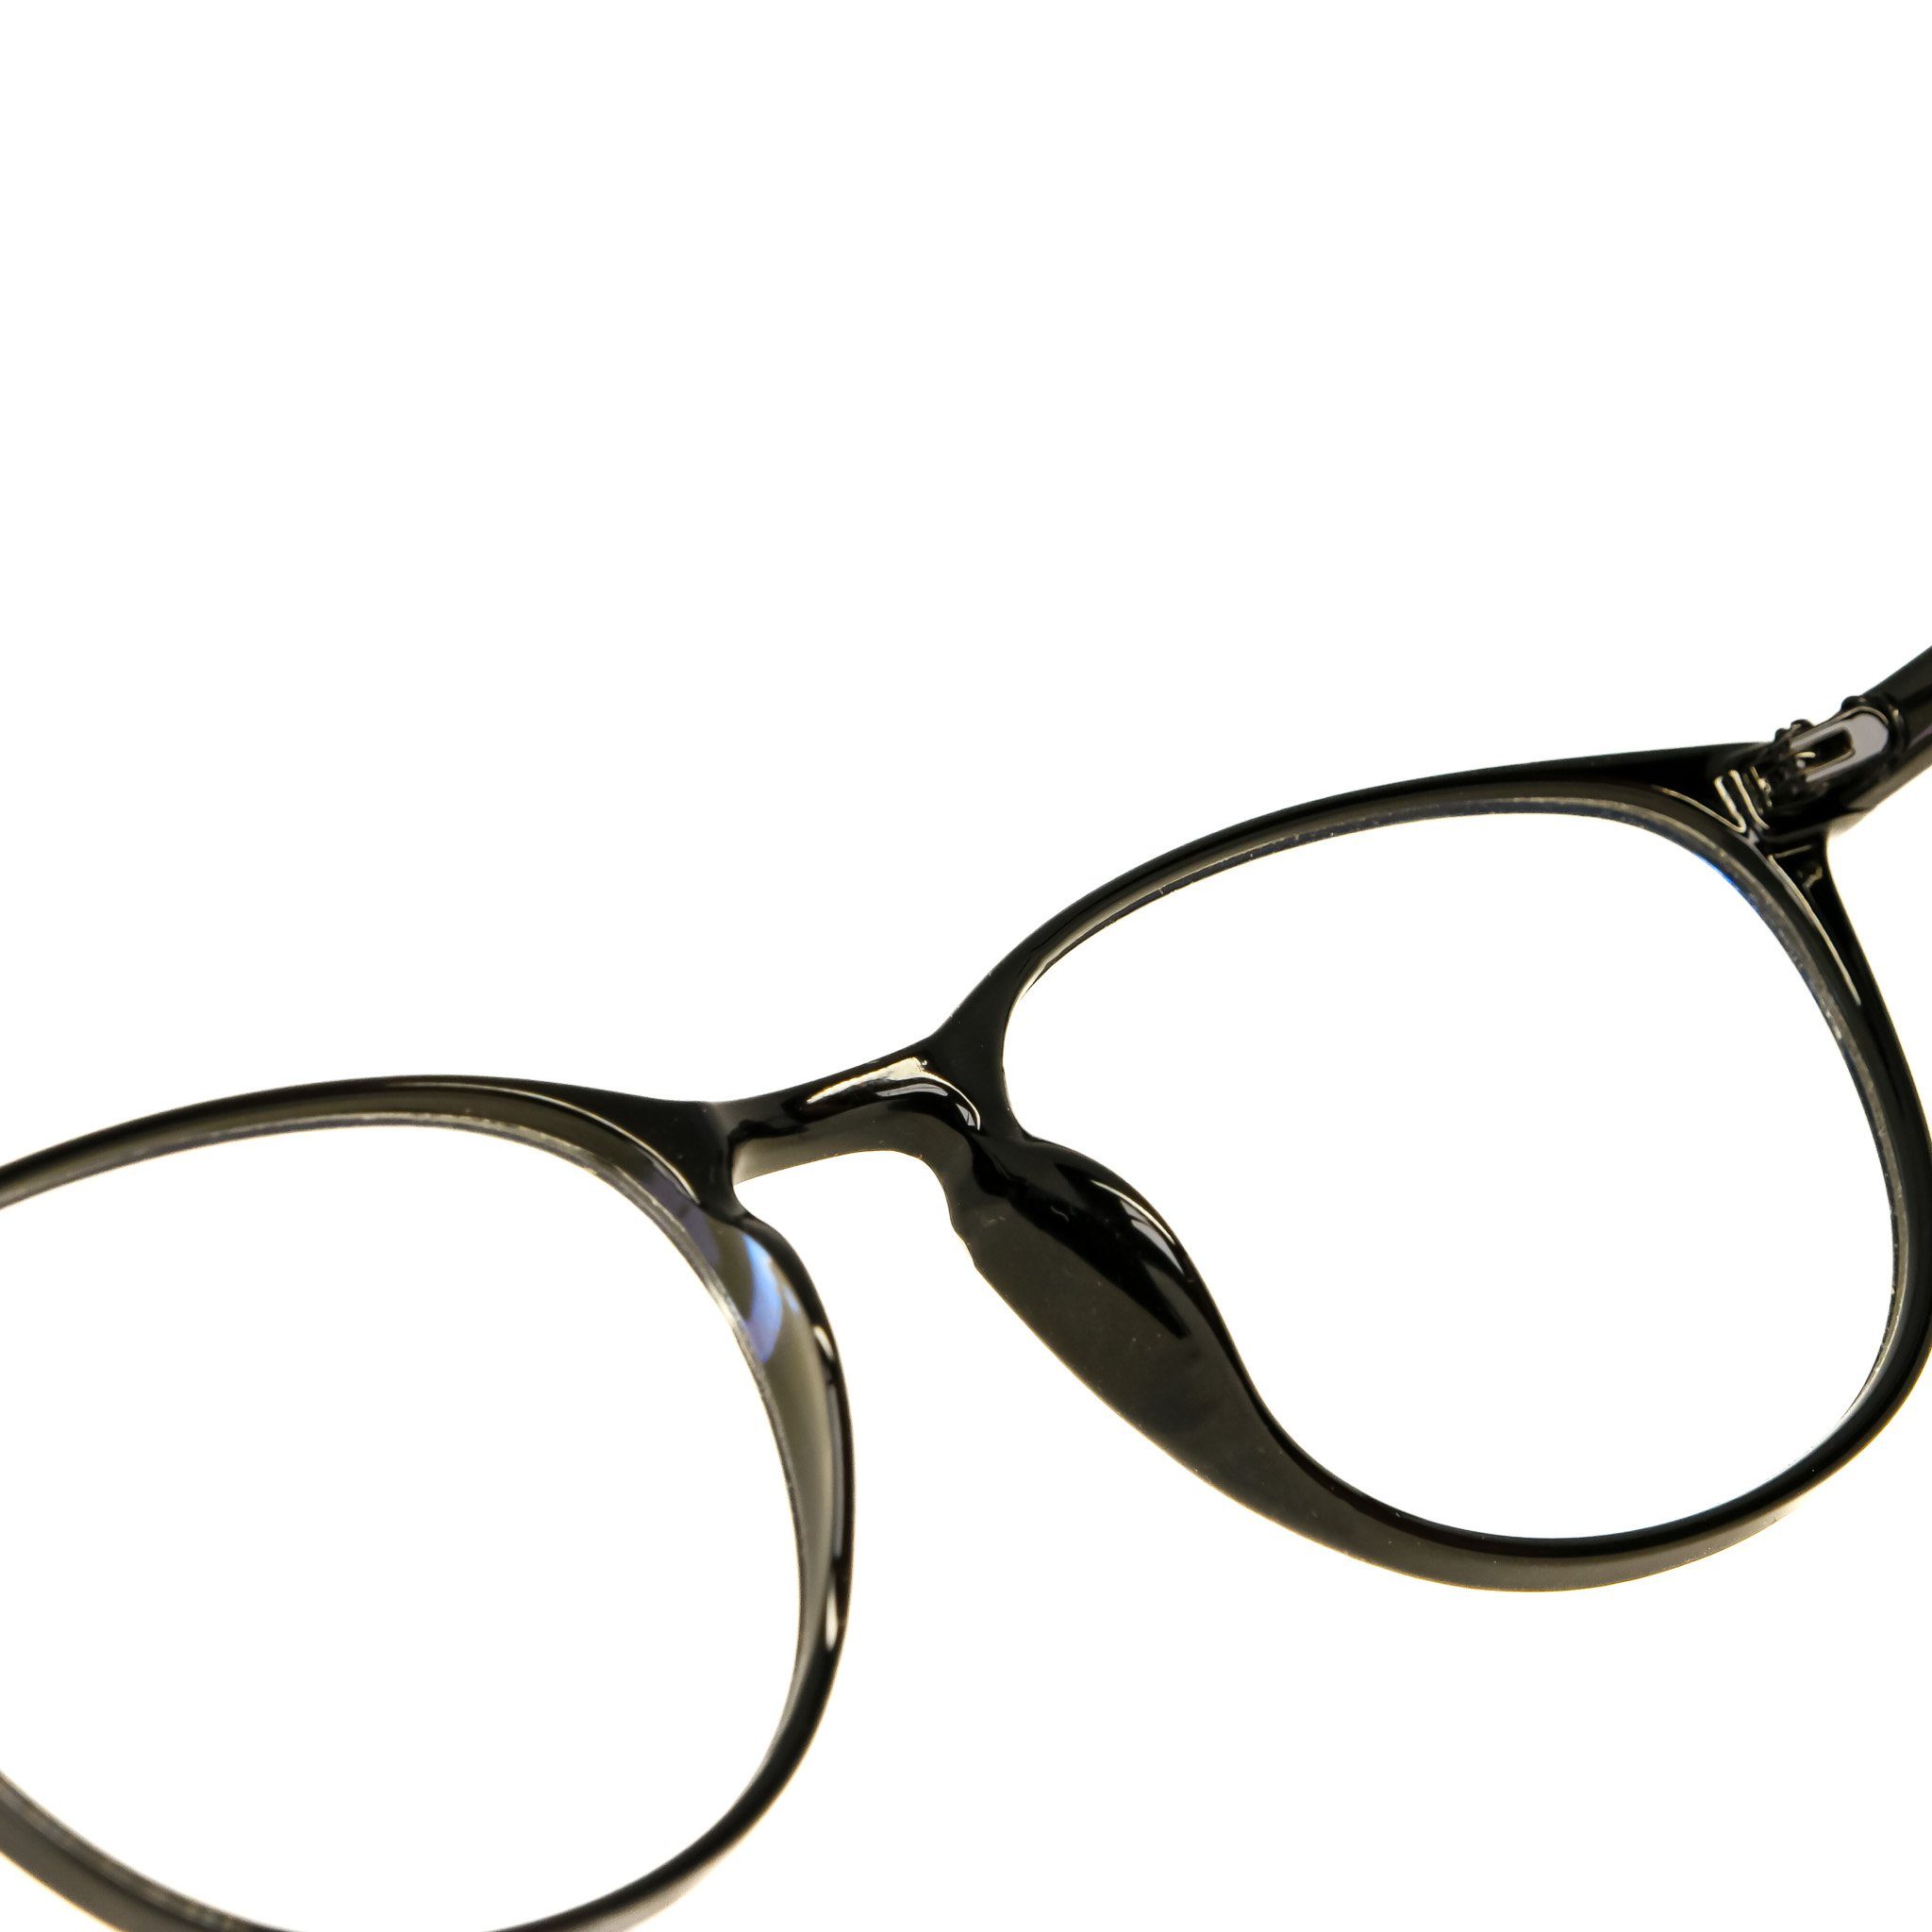 salazar.plus Sportbrille Gaming Schutz Brille ohne Brille, Stärke Bildschirmbrille Blaulicht Filter UV